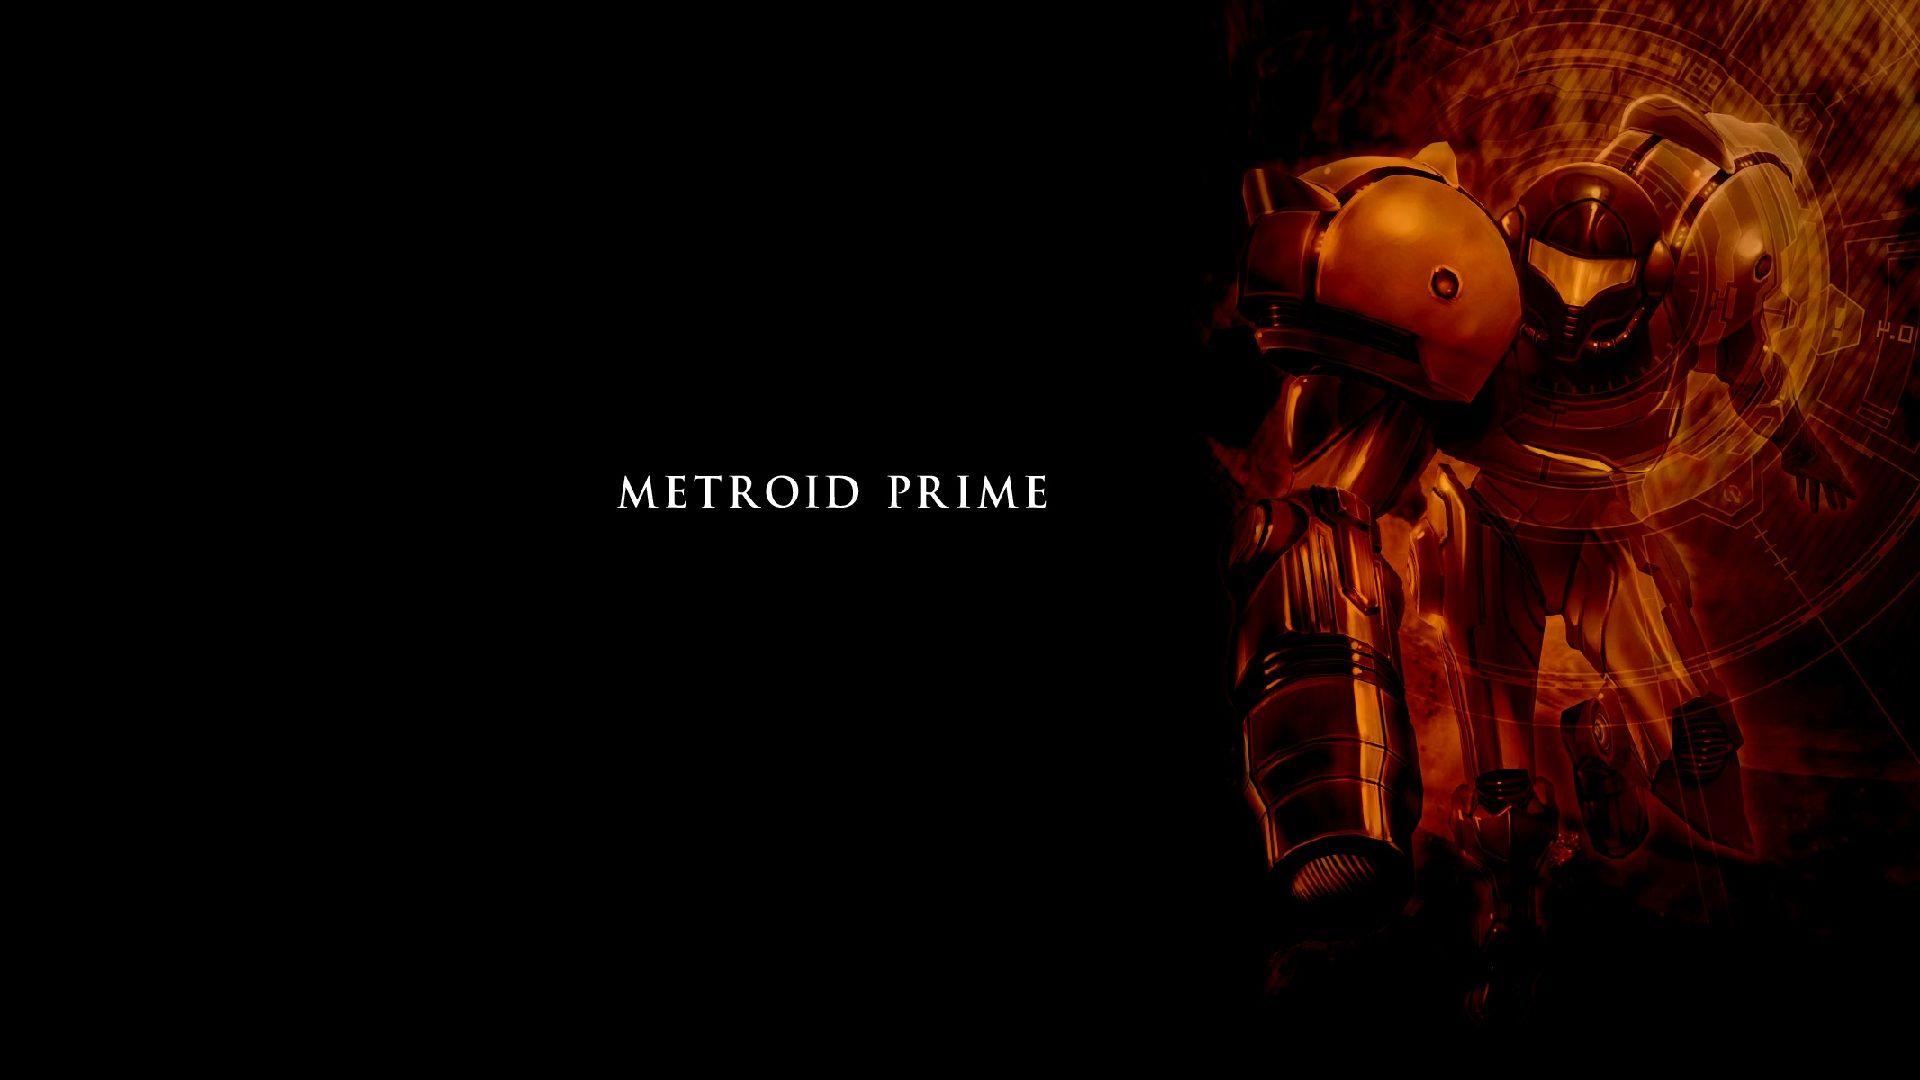 Metroid Prime Full HD Bakgrund and Bakgrundx1080